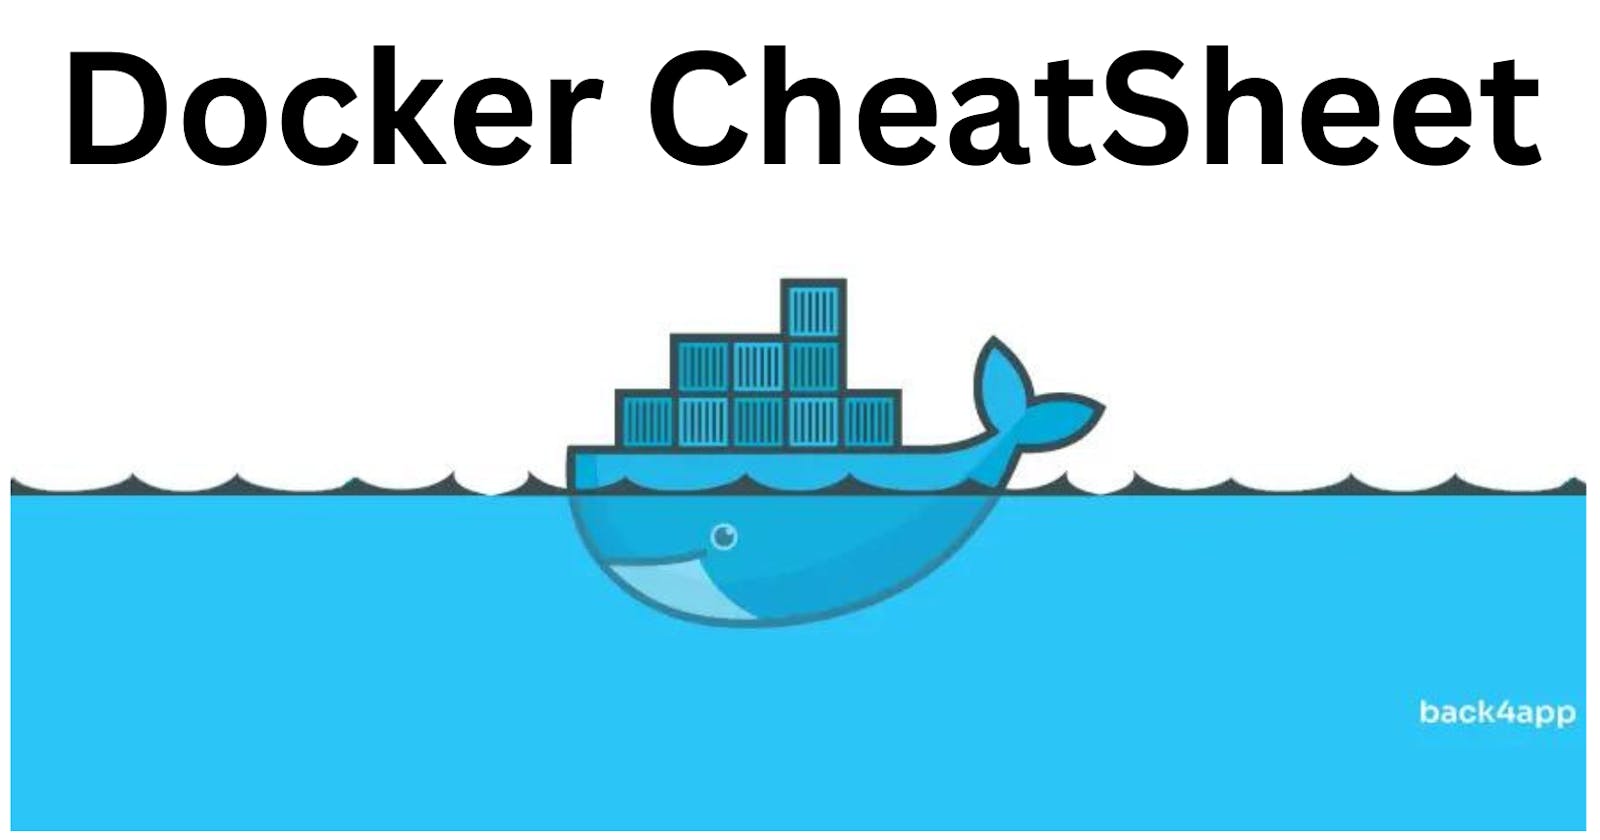 Docker Cheatsheet: Compiling My Docker Knowledge.